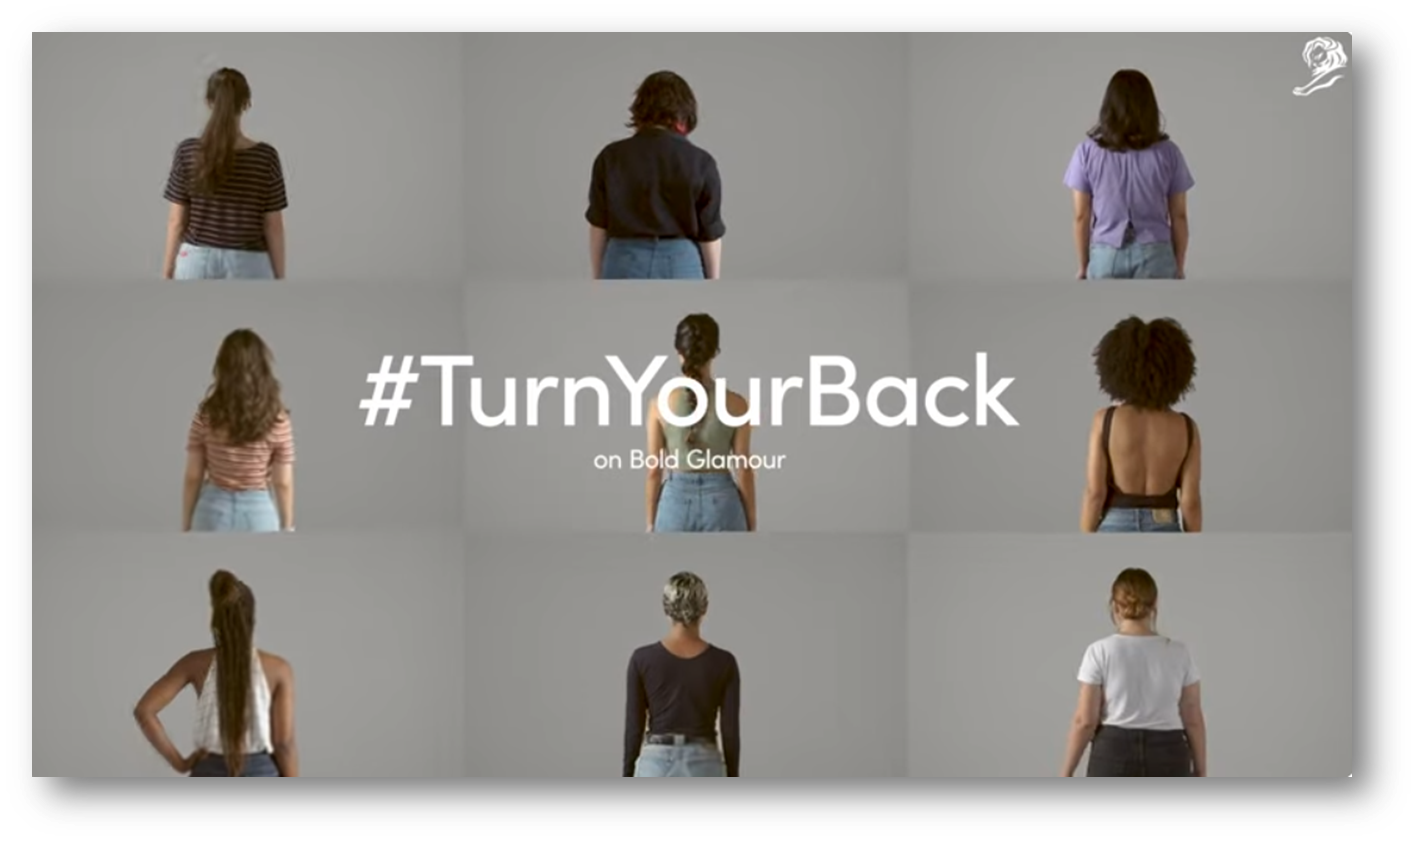 출처: 유튜브, Dove - Turn Your Back (case study)